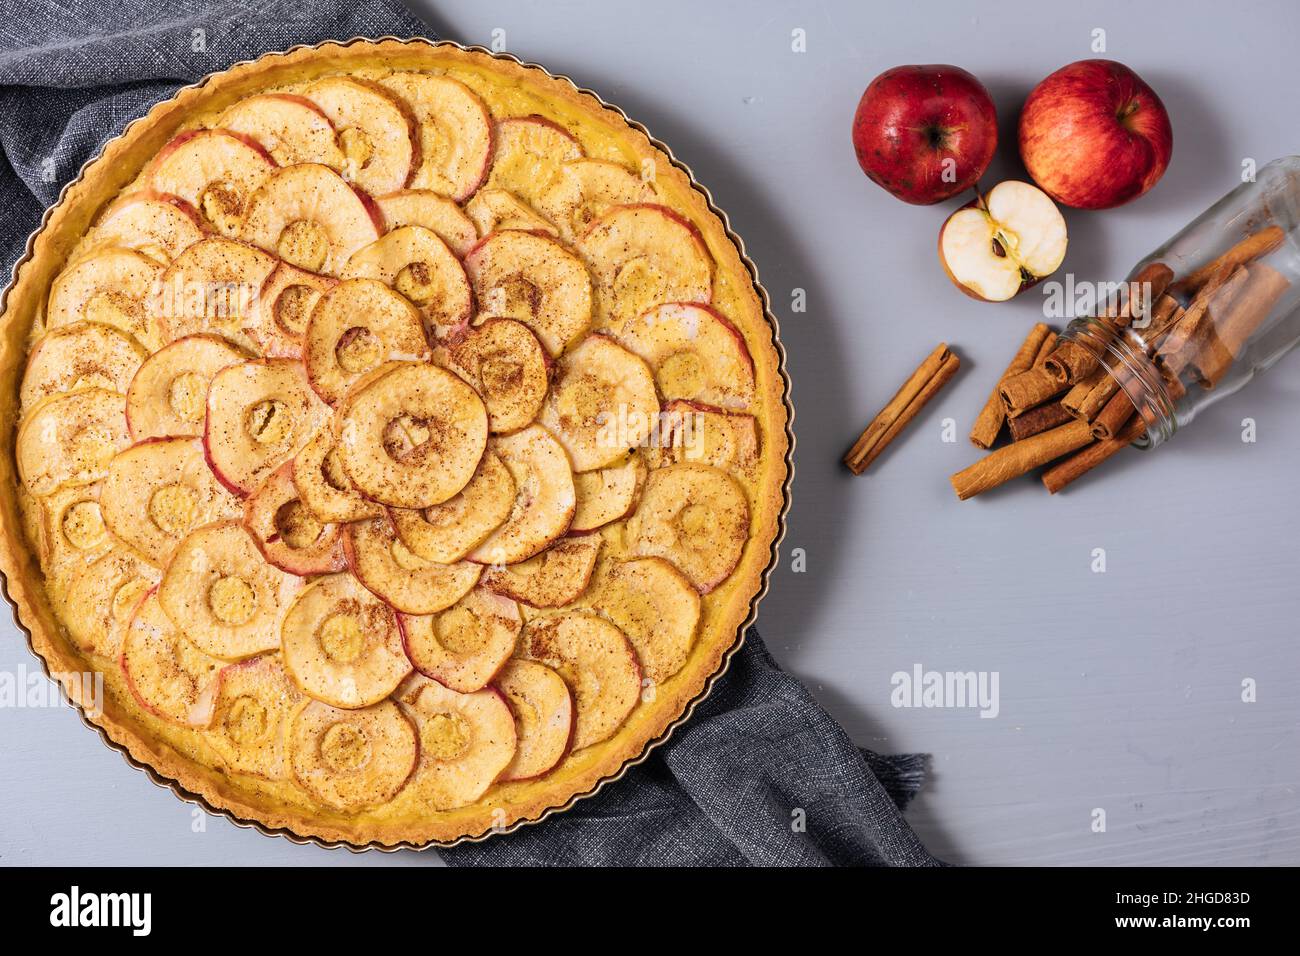 Vue de dessus de la tarte aux pommes française classique sur fond gris avec pommes et bâtons de cannelle Banque D'Images